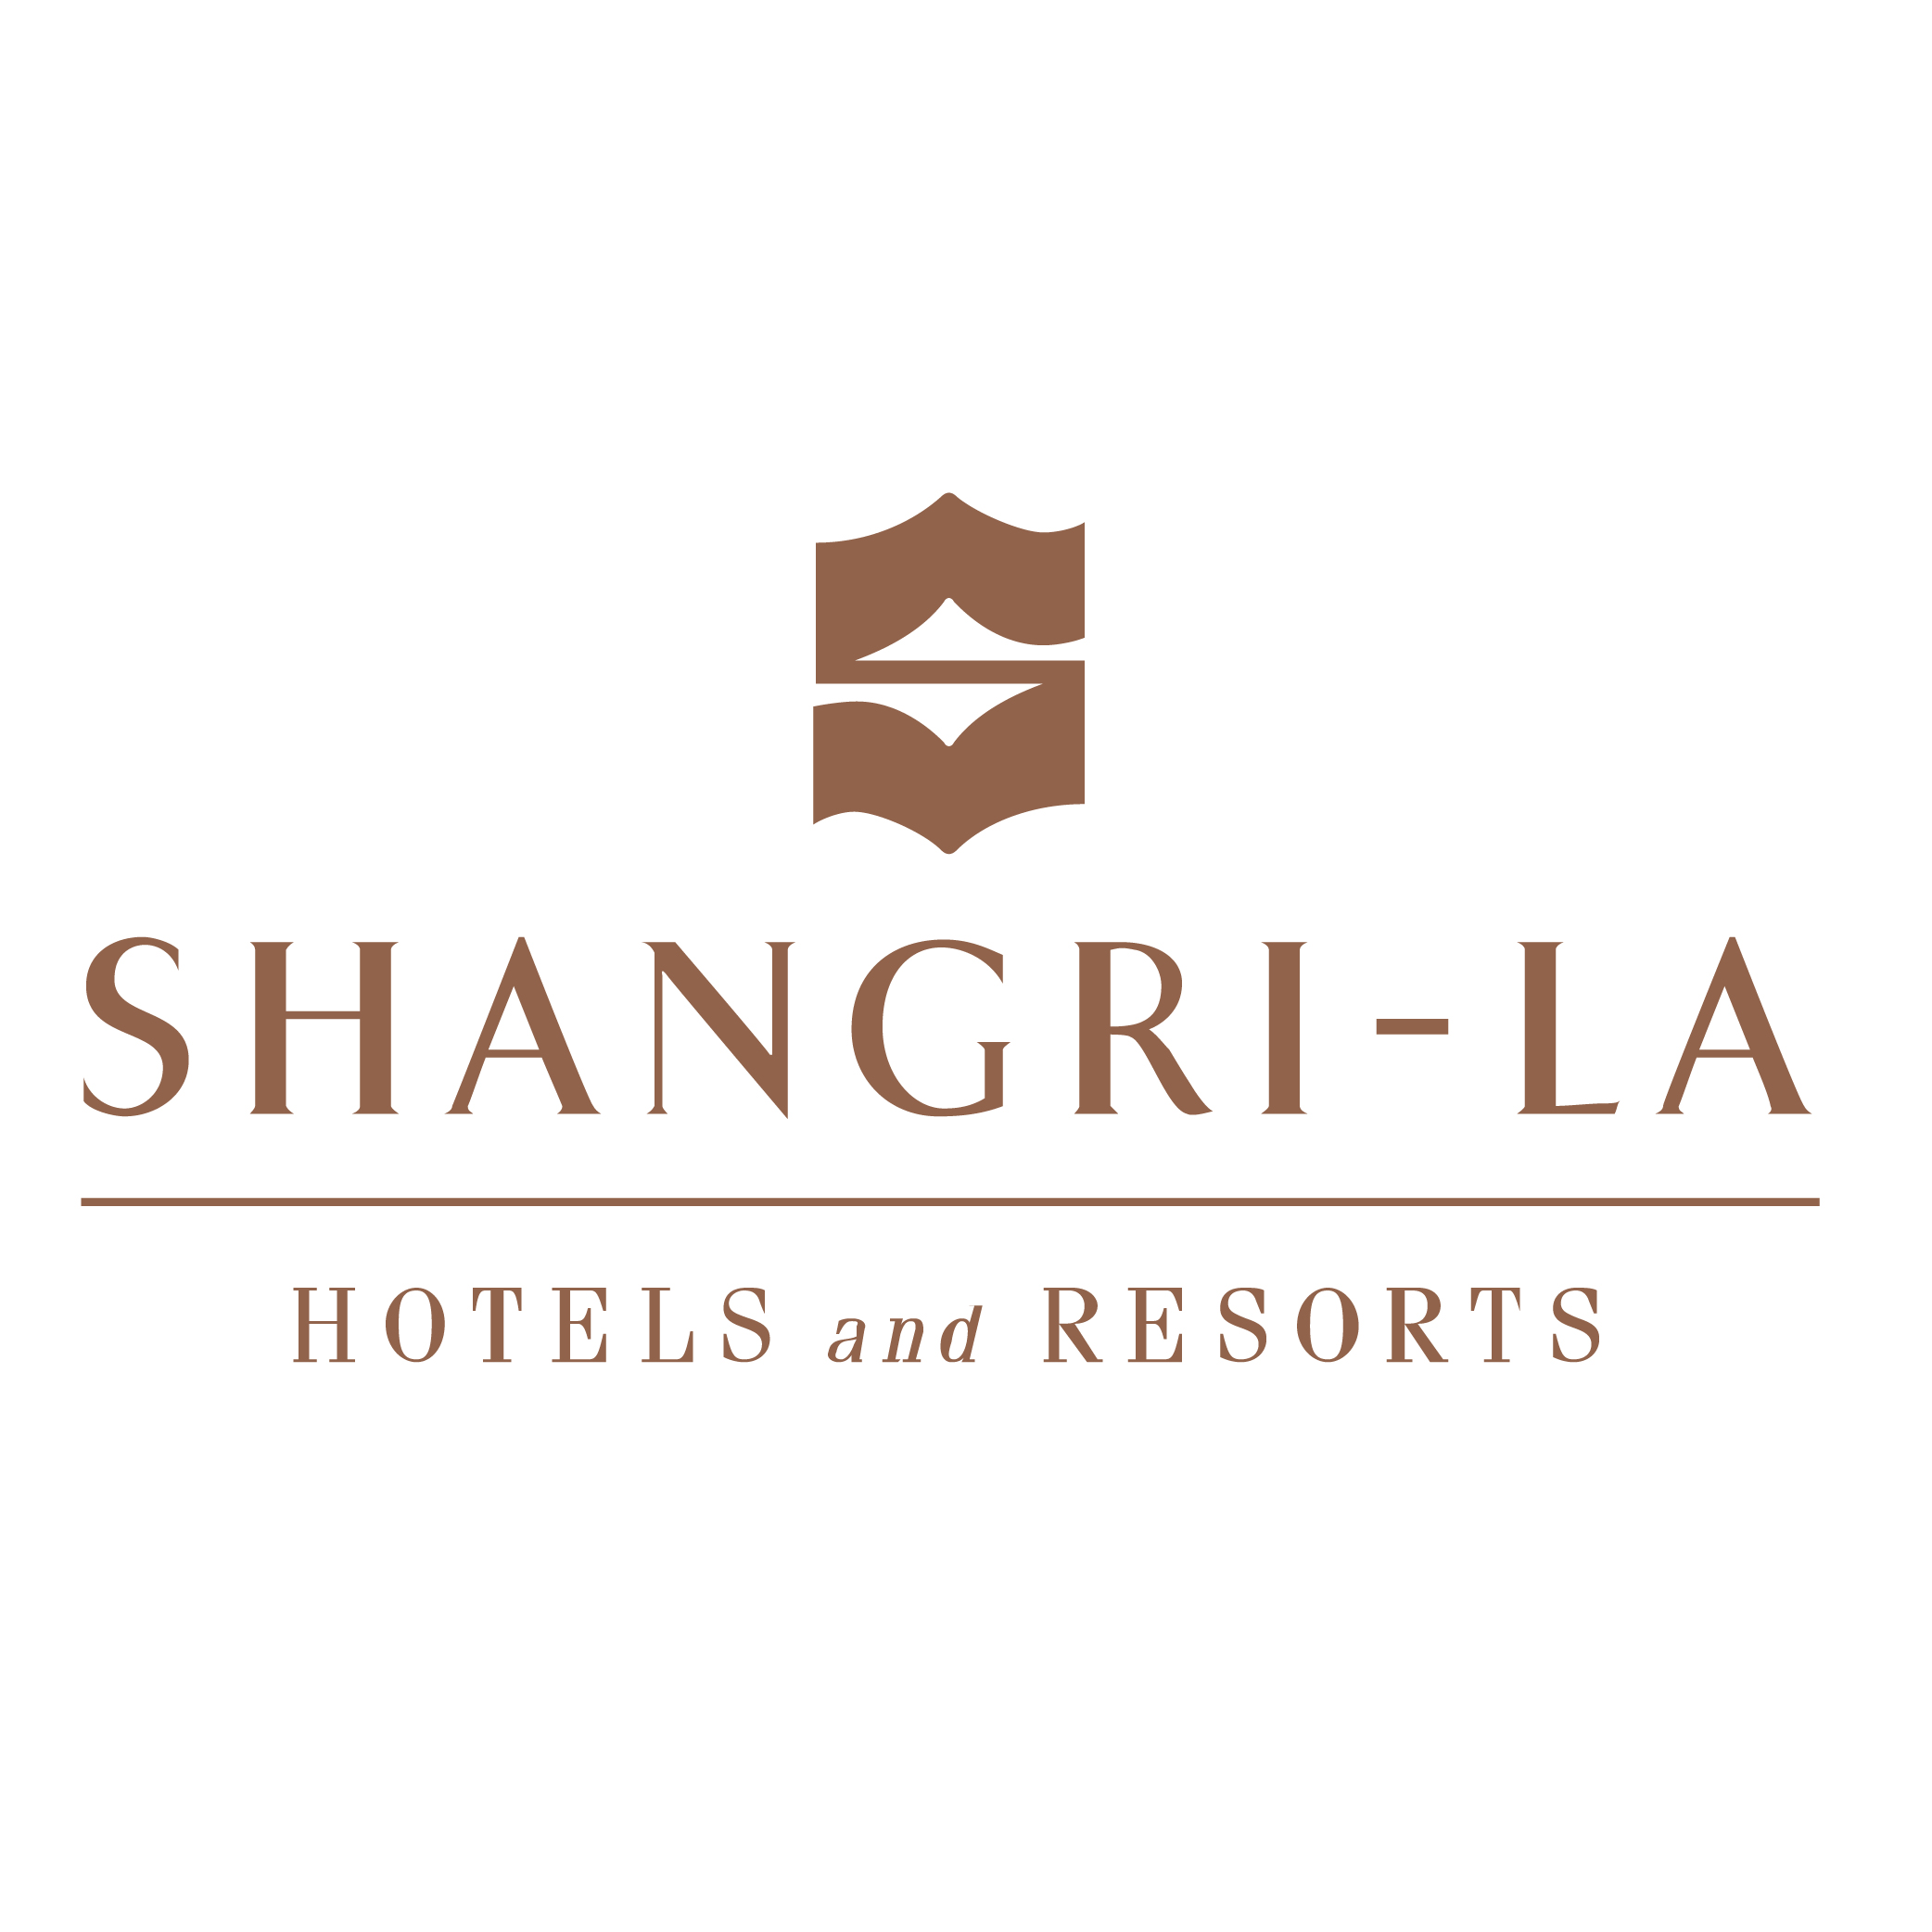 成都香格里拉酒店logo图片